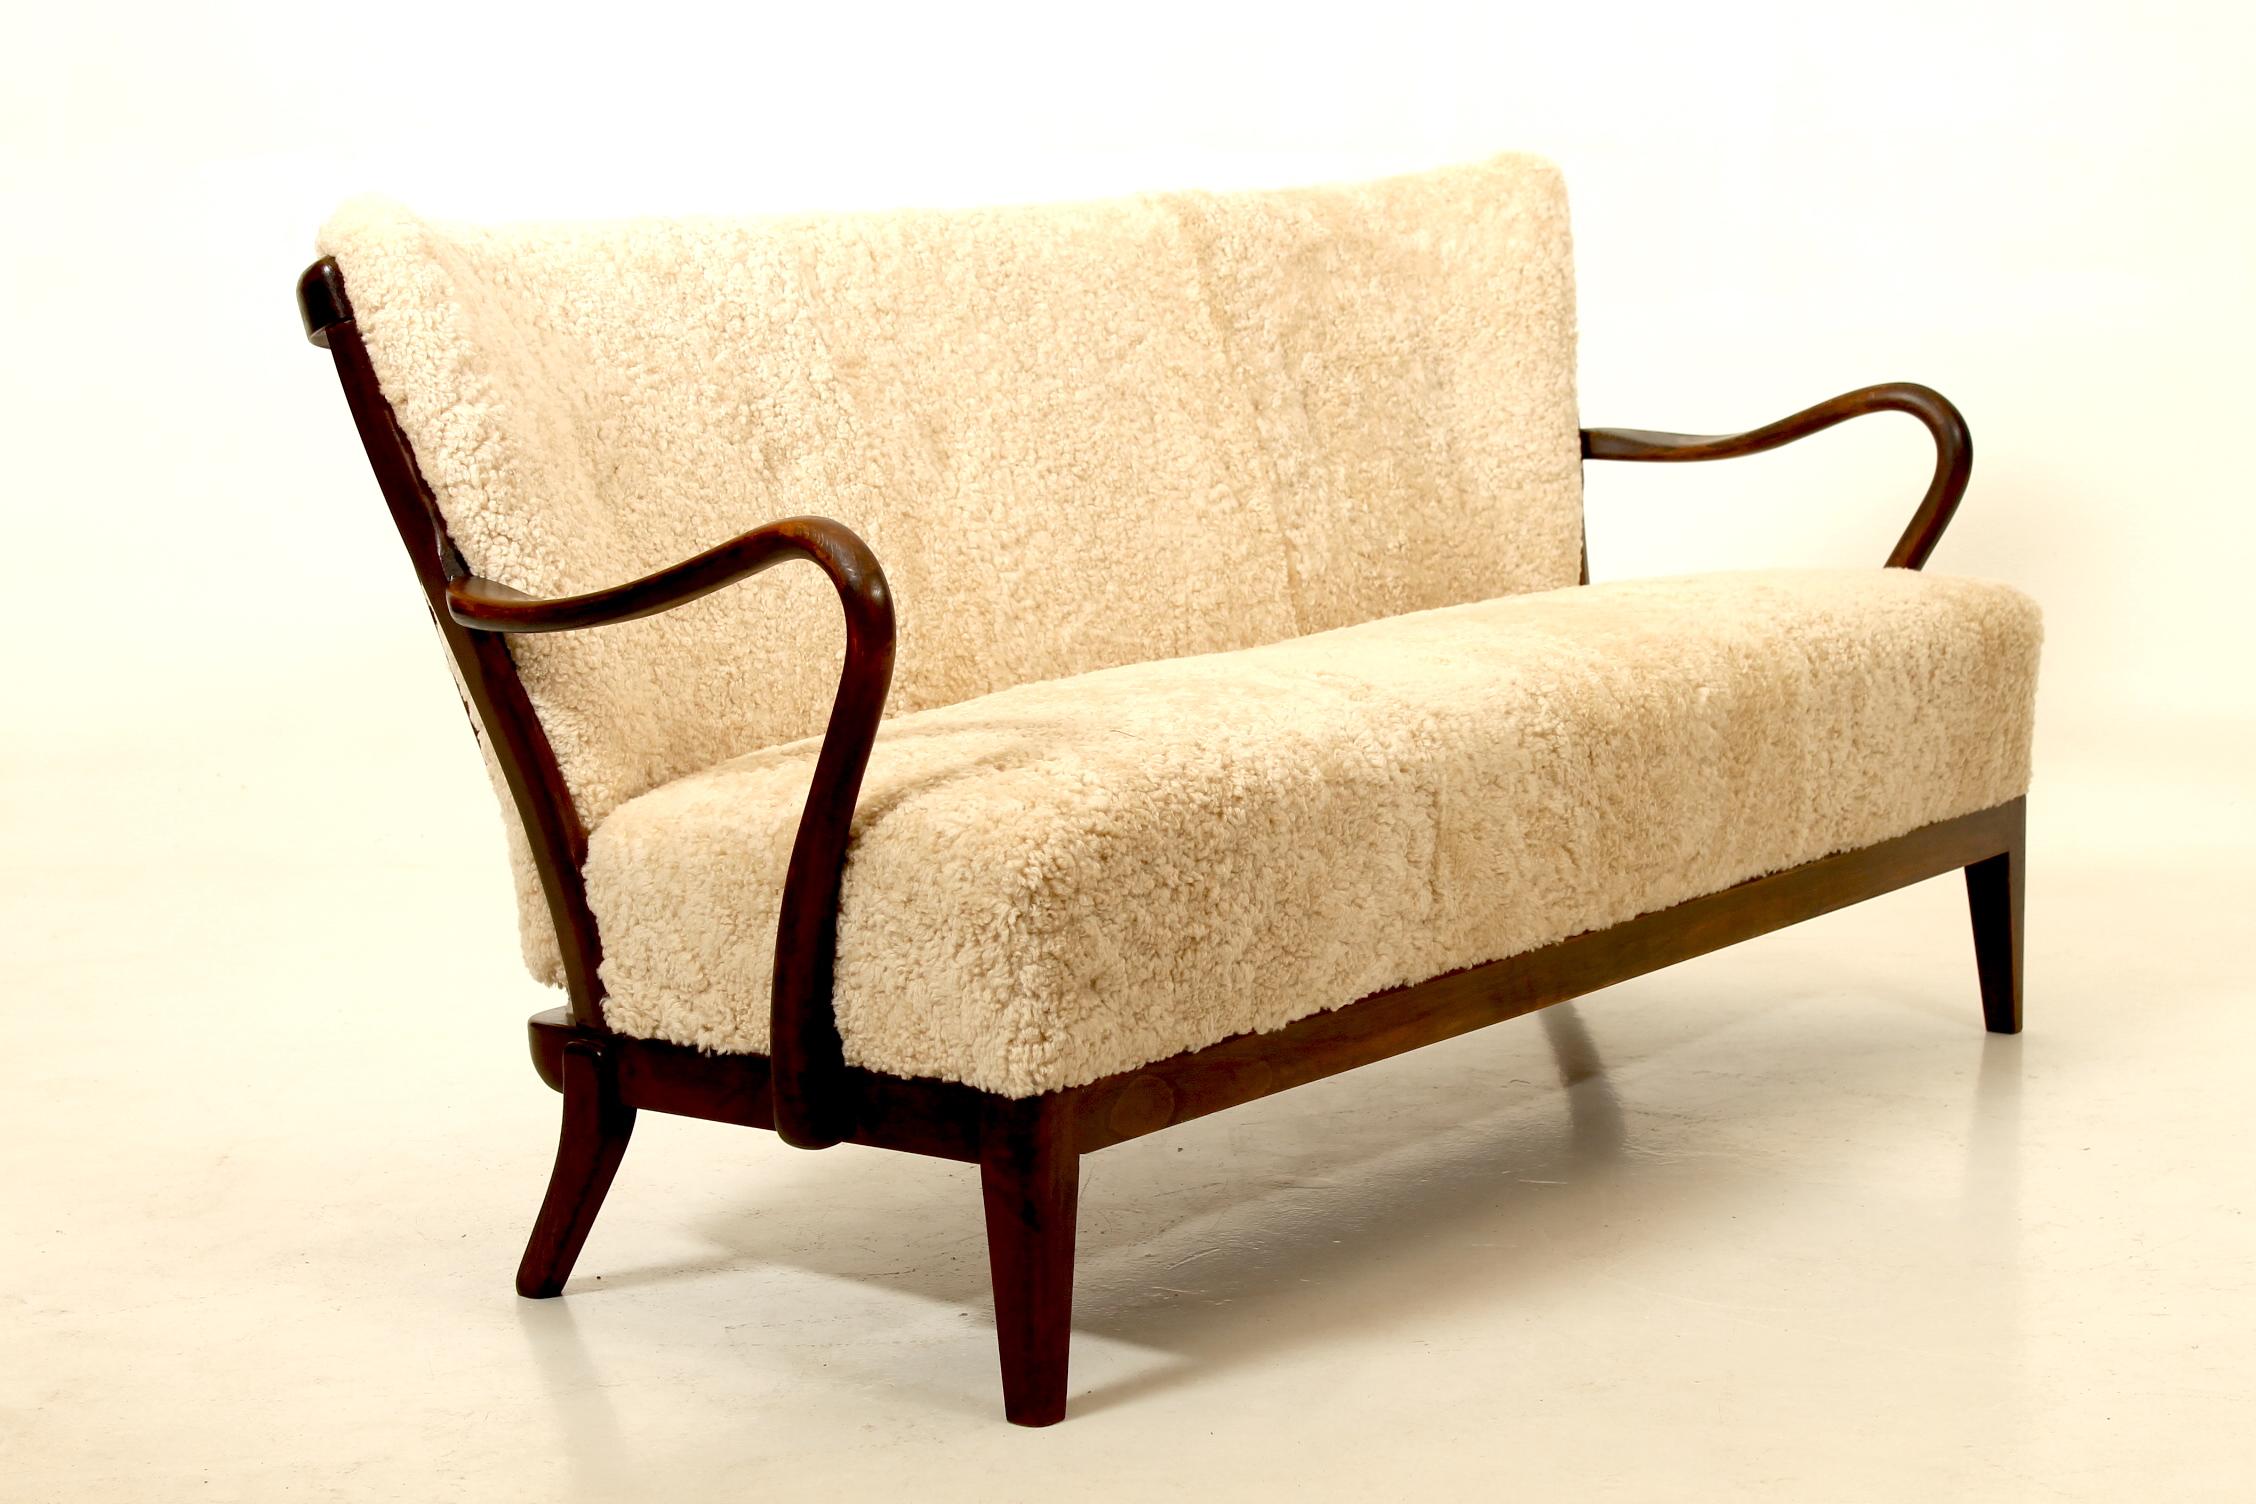 Sofa Rara, entworfen von Alfred Christensen in den 1940er Jahren und hergestellt von Slagelse Møbelværk. Restauriert mit neuem Schafsleder. 